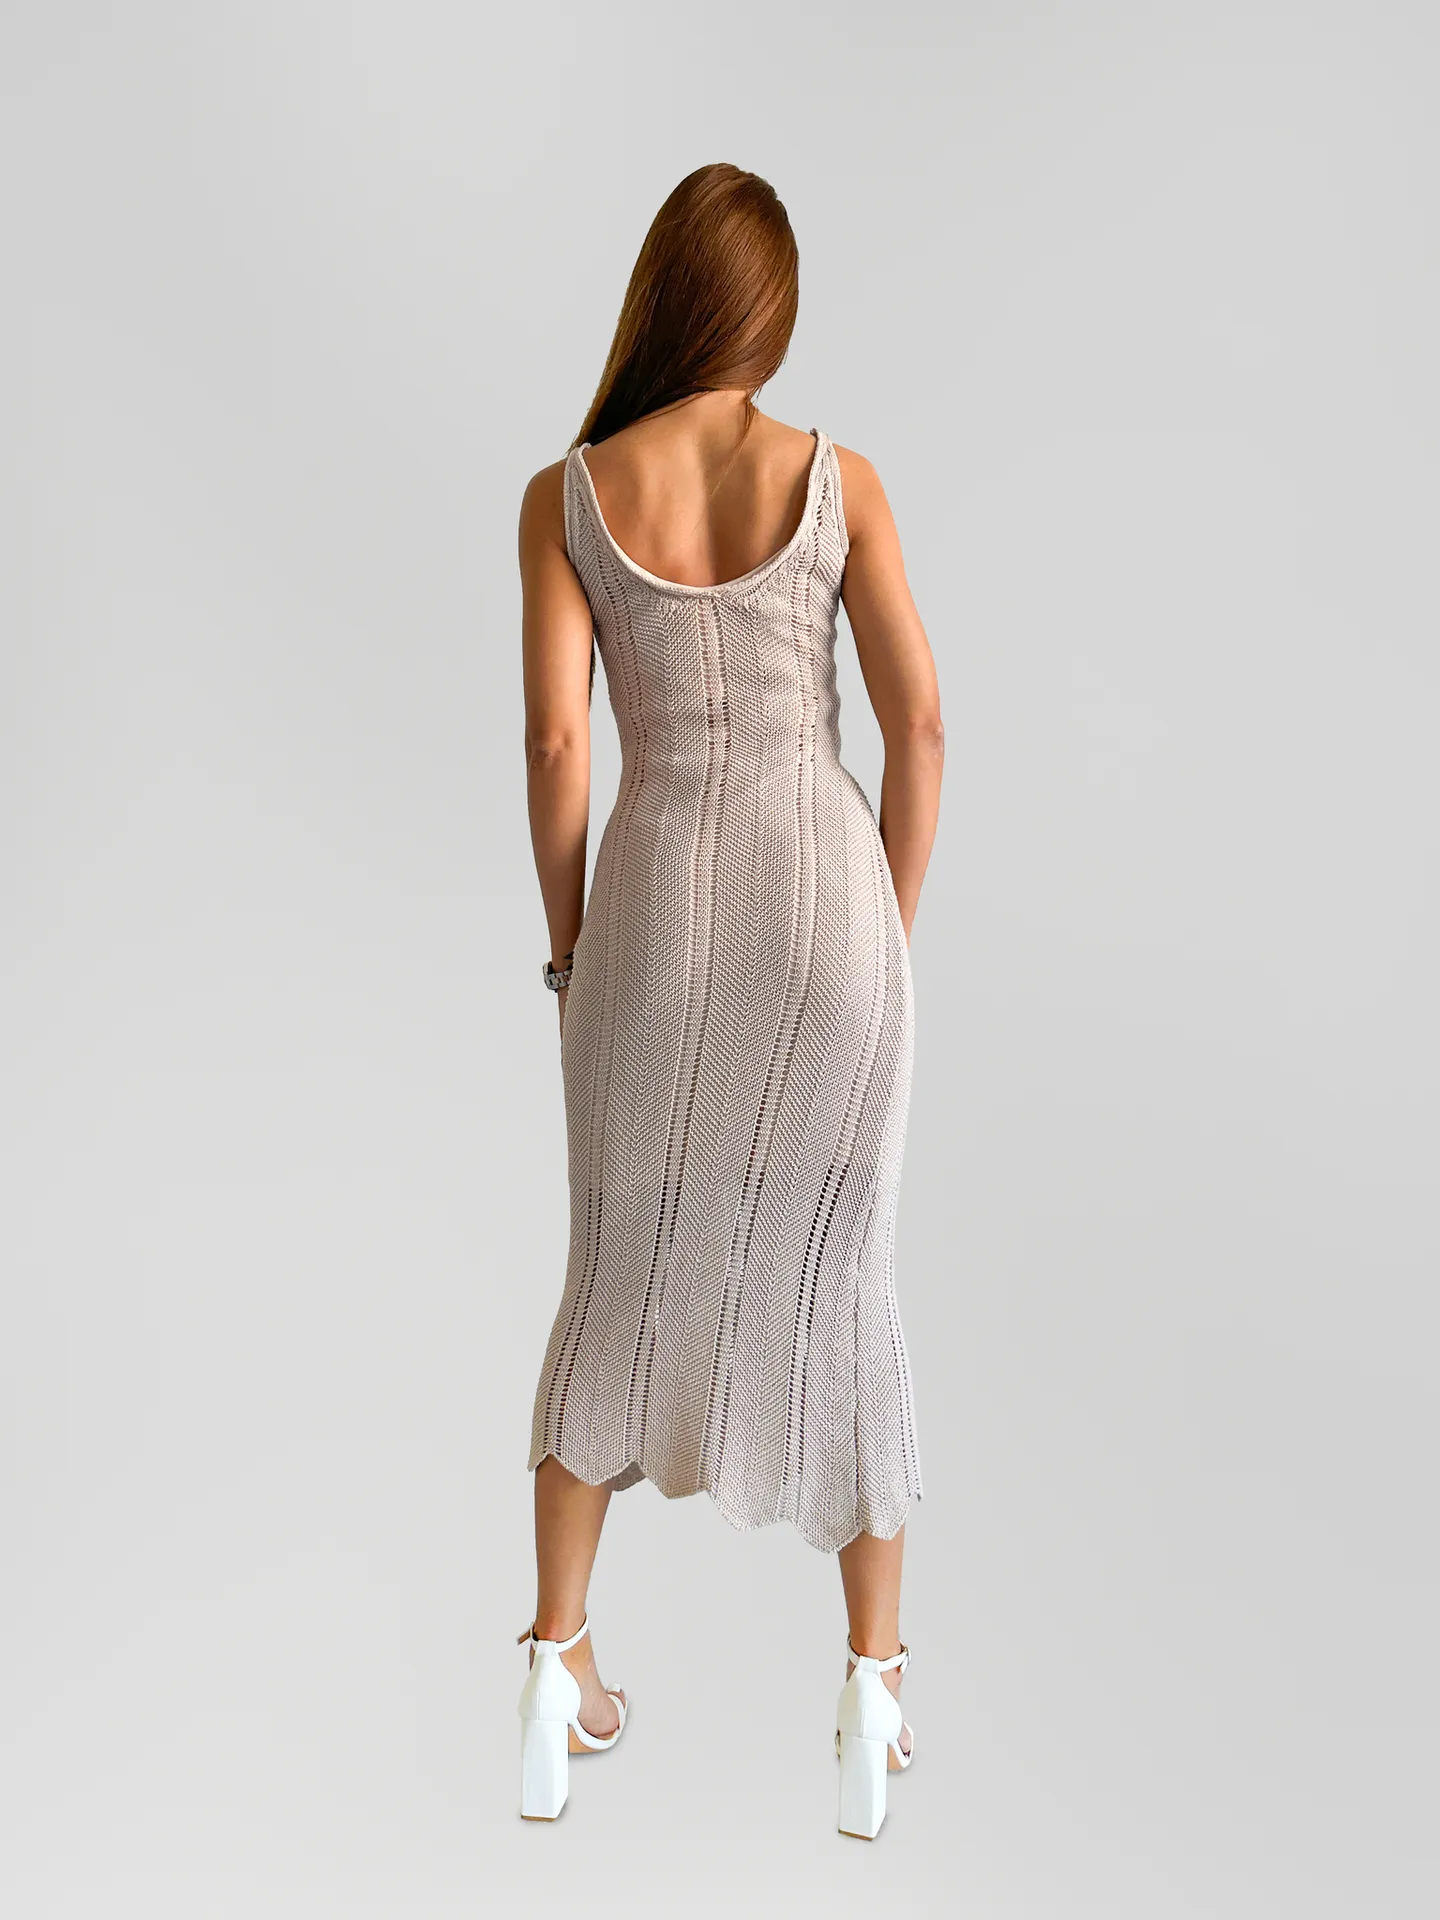 Платье Avrile 0989 10.0 вязаное длинное с V-образным вырезом